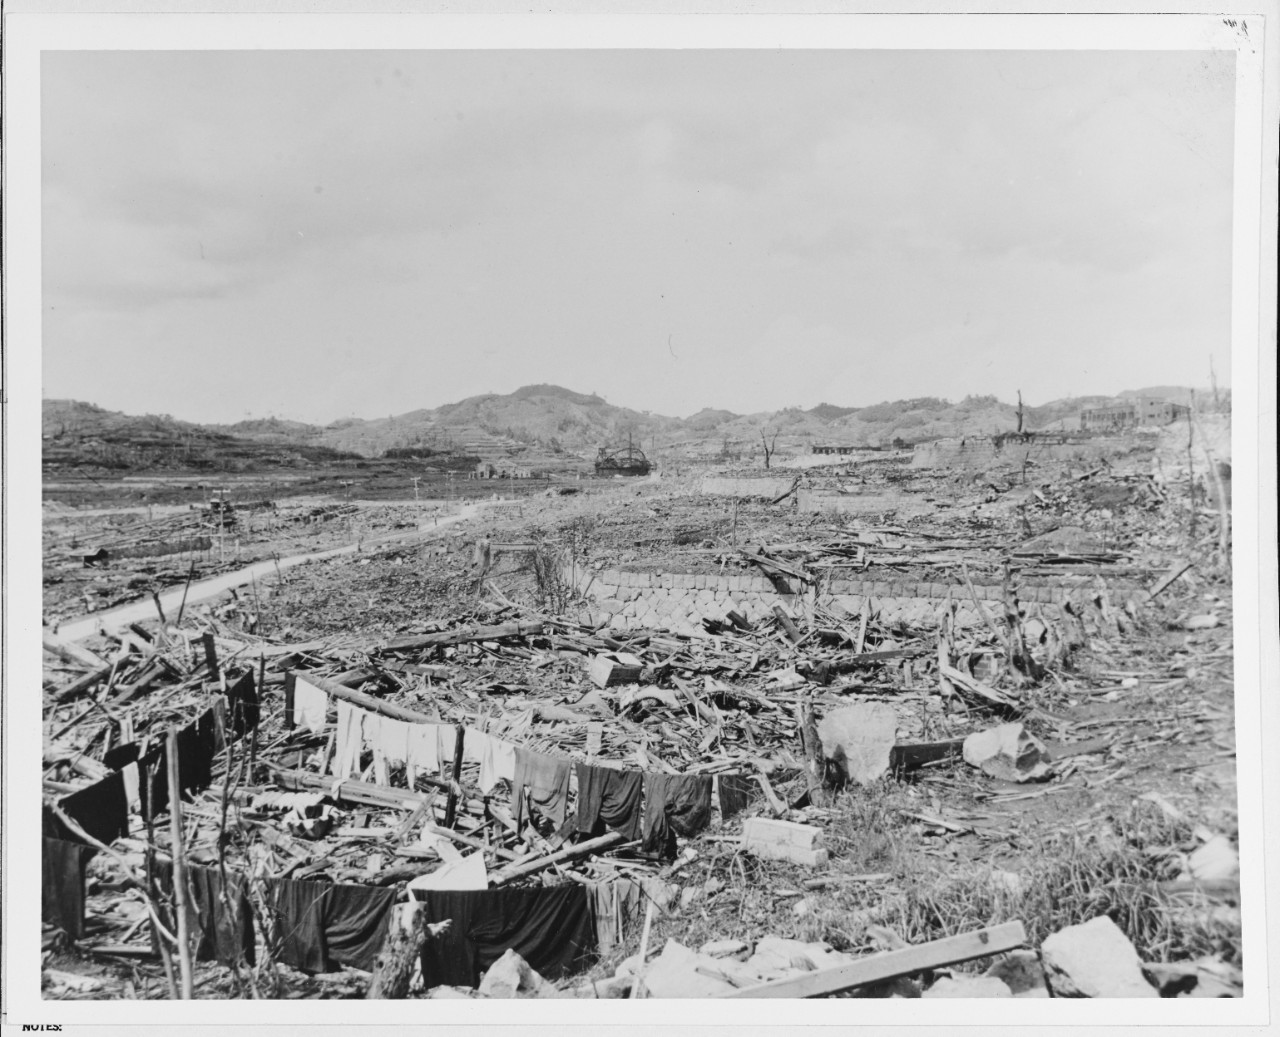 A-bomb damage at Nagasaki, Japan